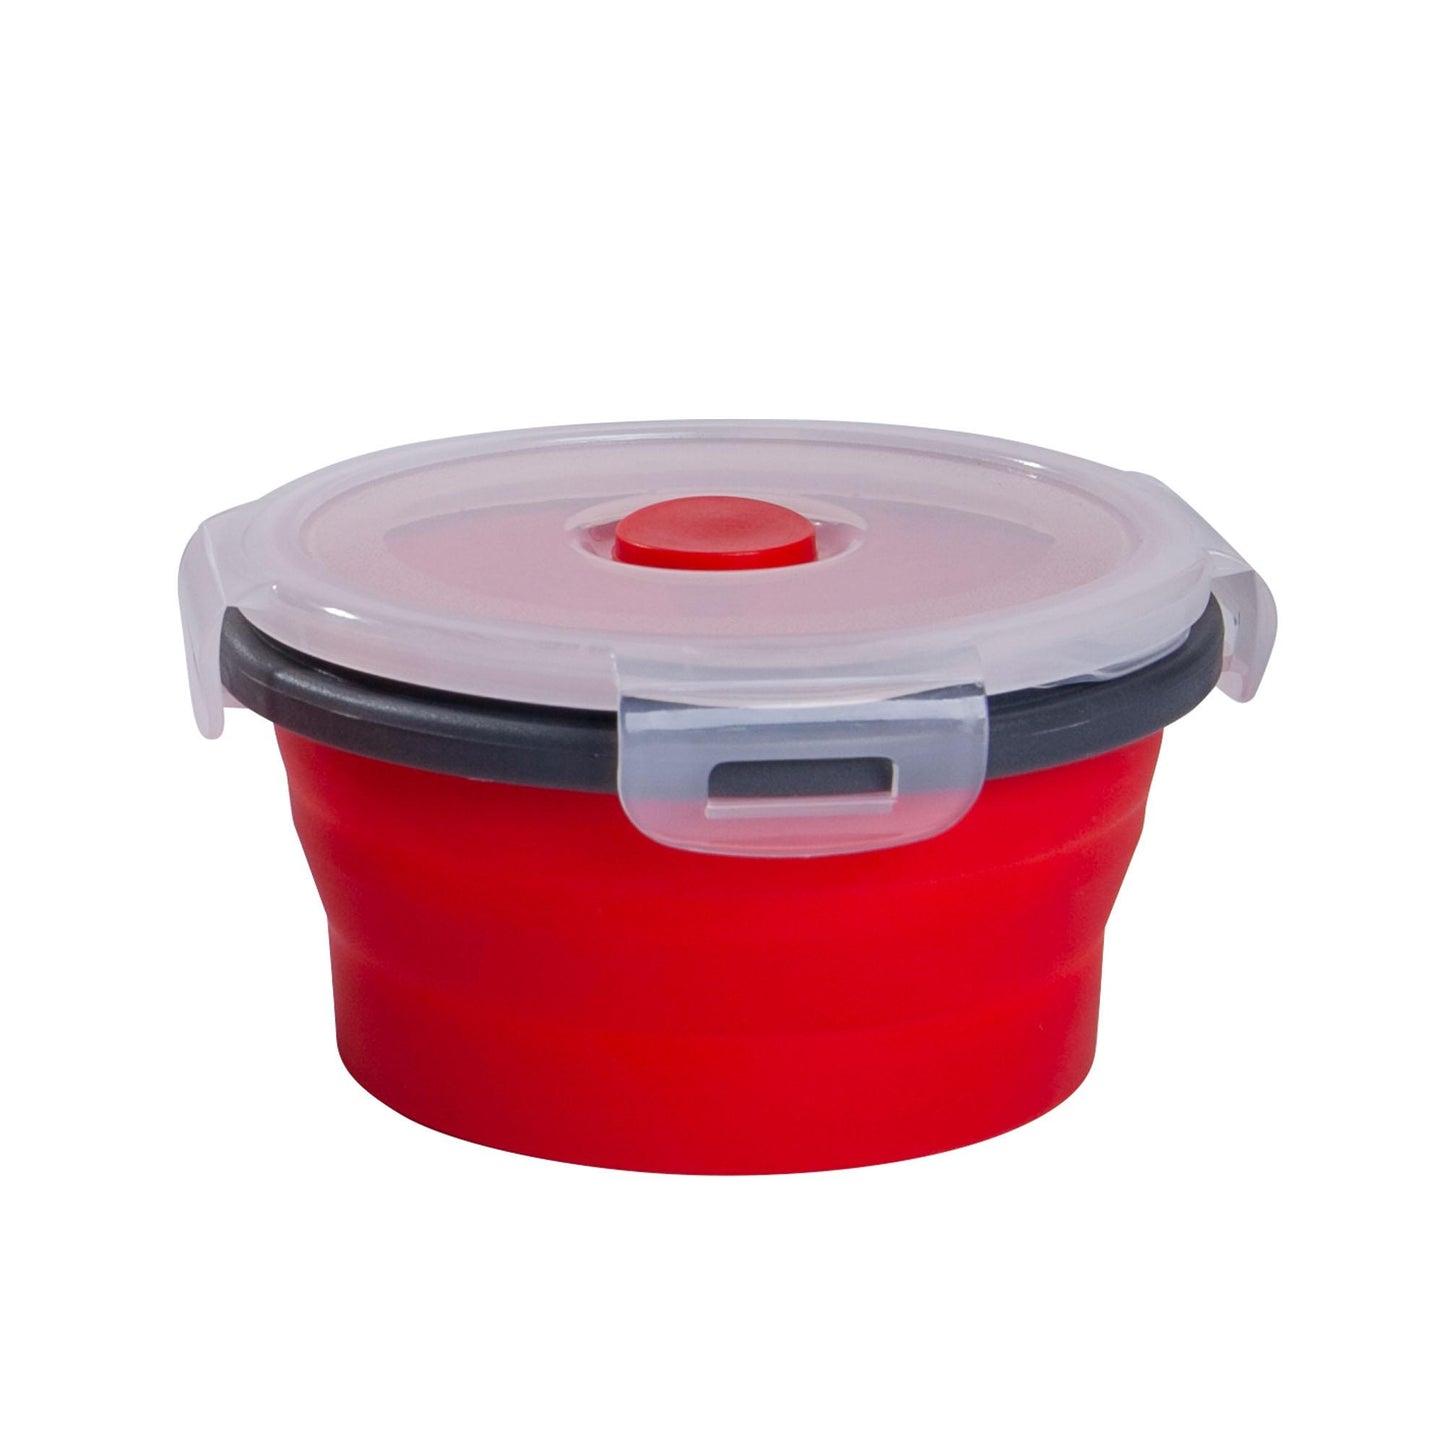 mixcover faltbare Frischhaltedose mit Deckel aus Silikon Bentobox Brotdose Lunchbox Picknick Camping Schüssel BPA-frei platzsparend 350 ml rot